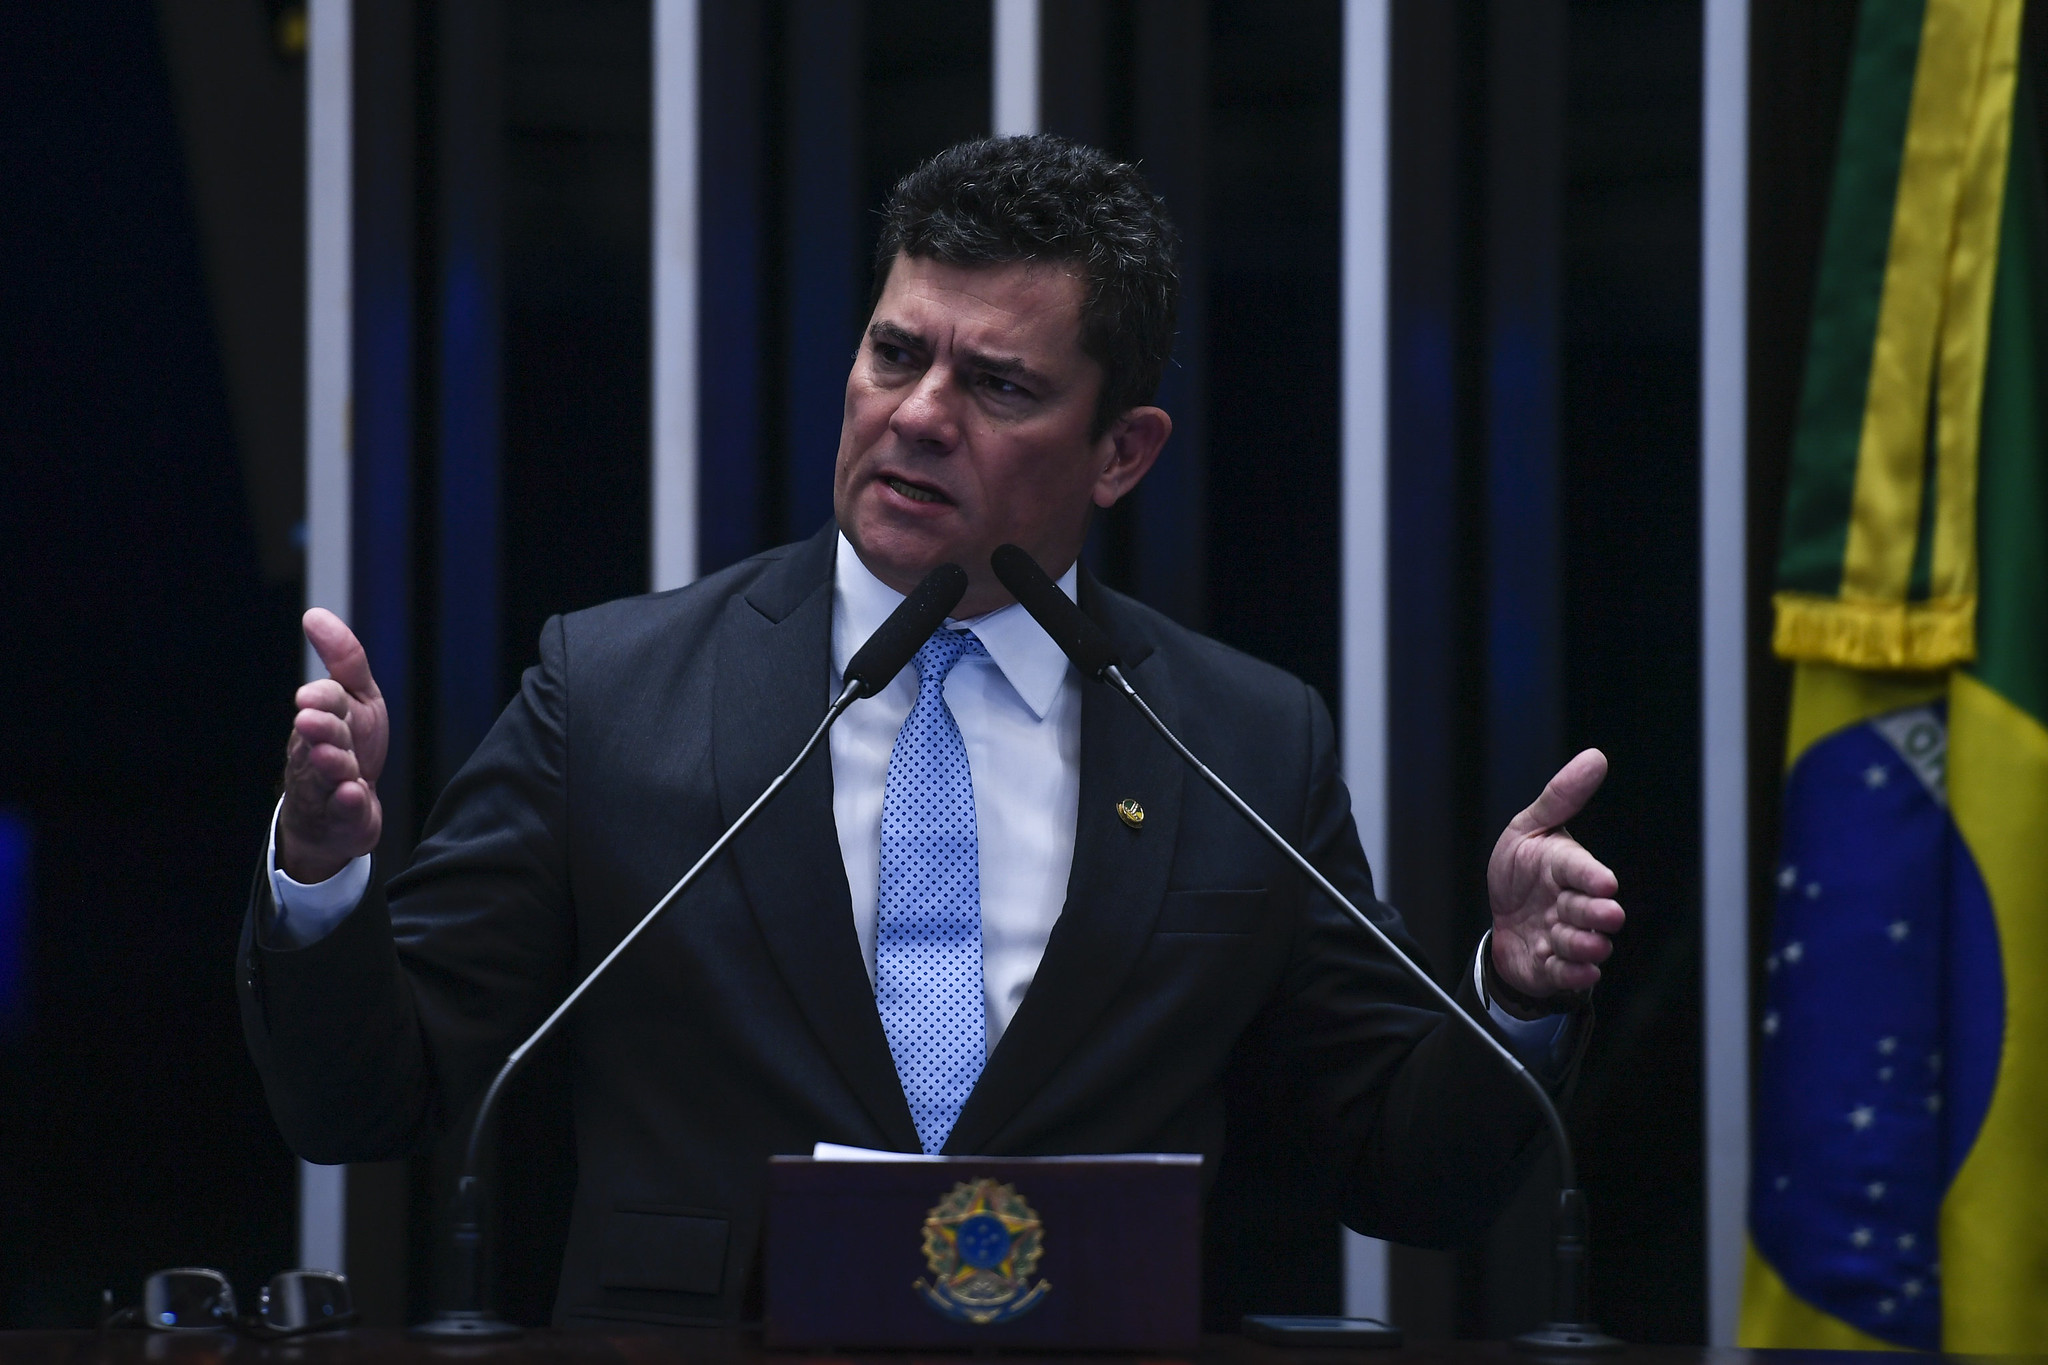 Empresário e ex-deputado estadual, Tony Garcia solicitou ao STF a anulação de todos os atos de Sergio Moro na condução dos processos em que foi réu